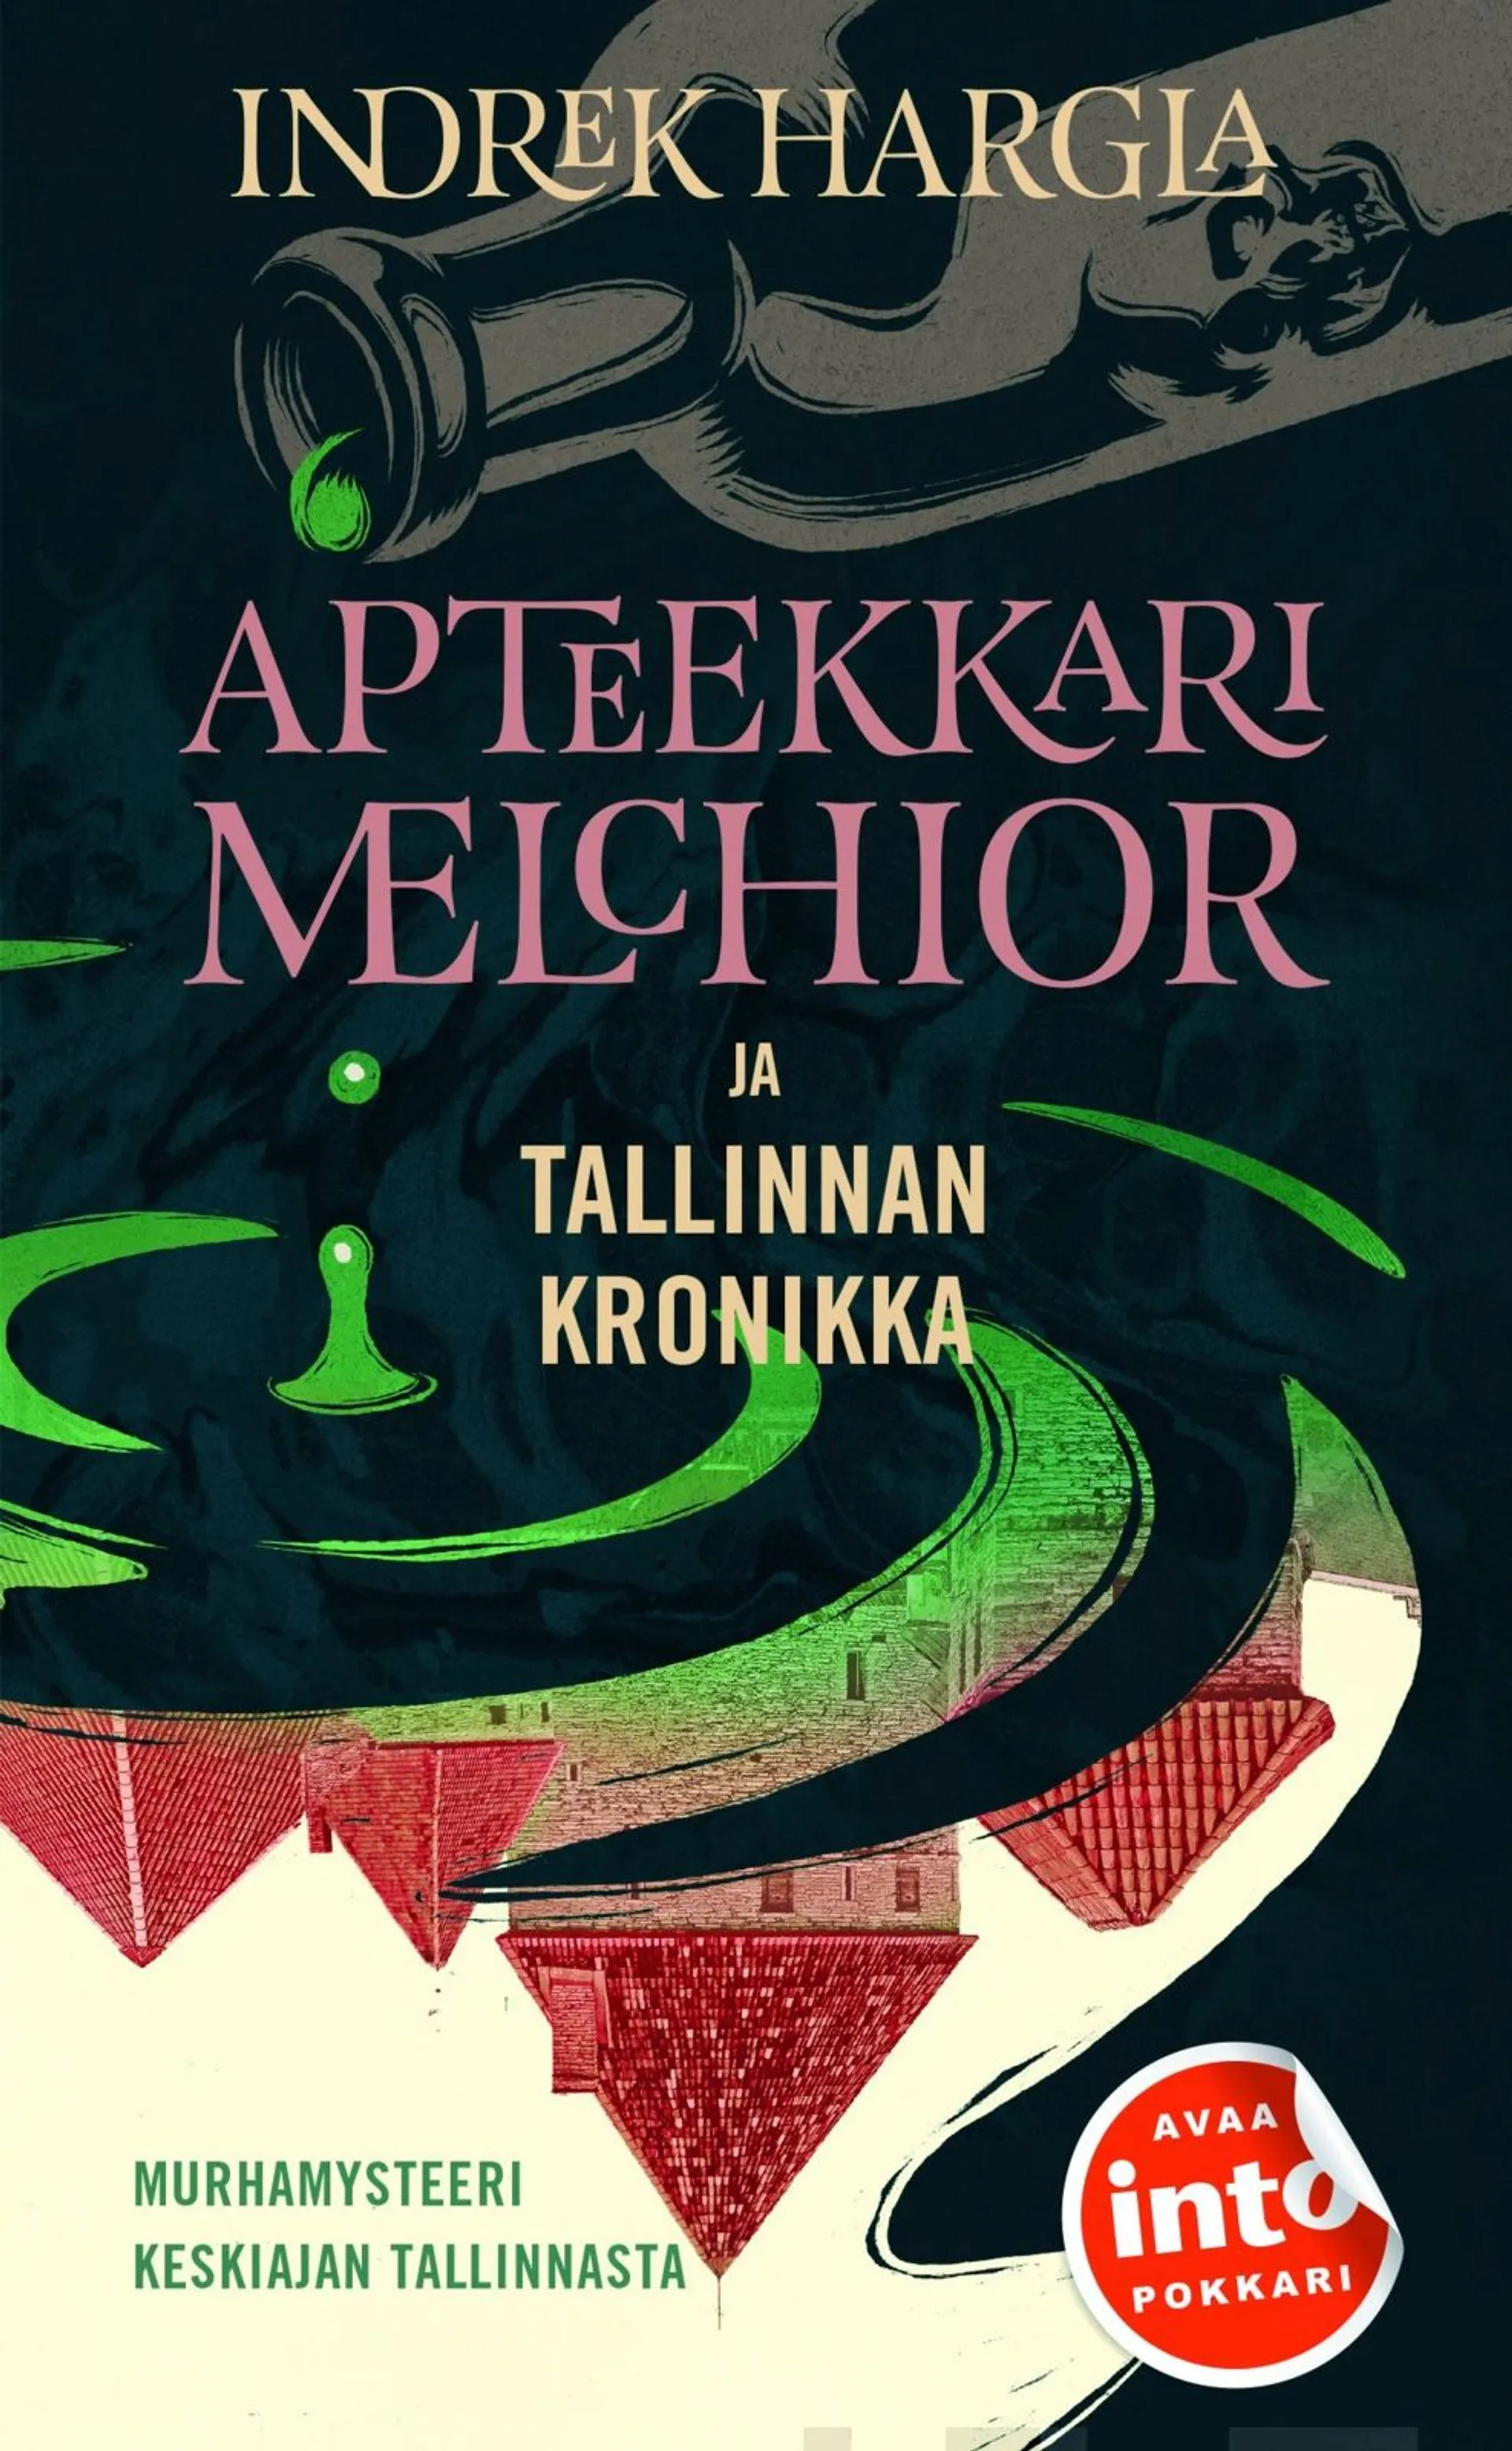 Hargla, Apteekkari Melchior ja Tallinnan kronikka